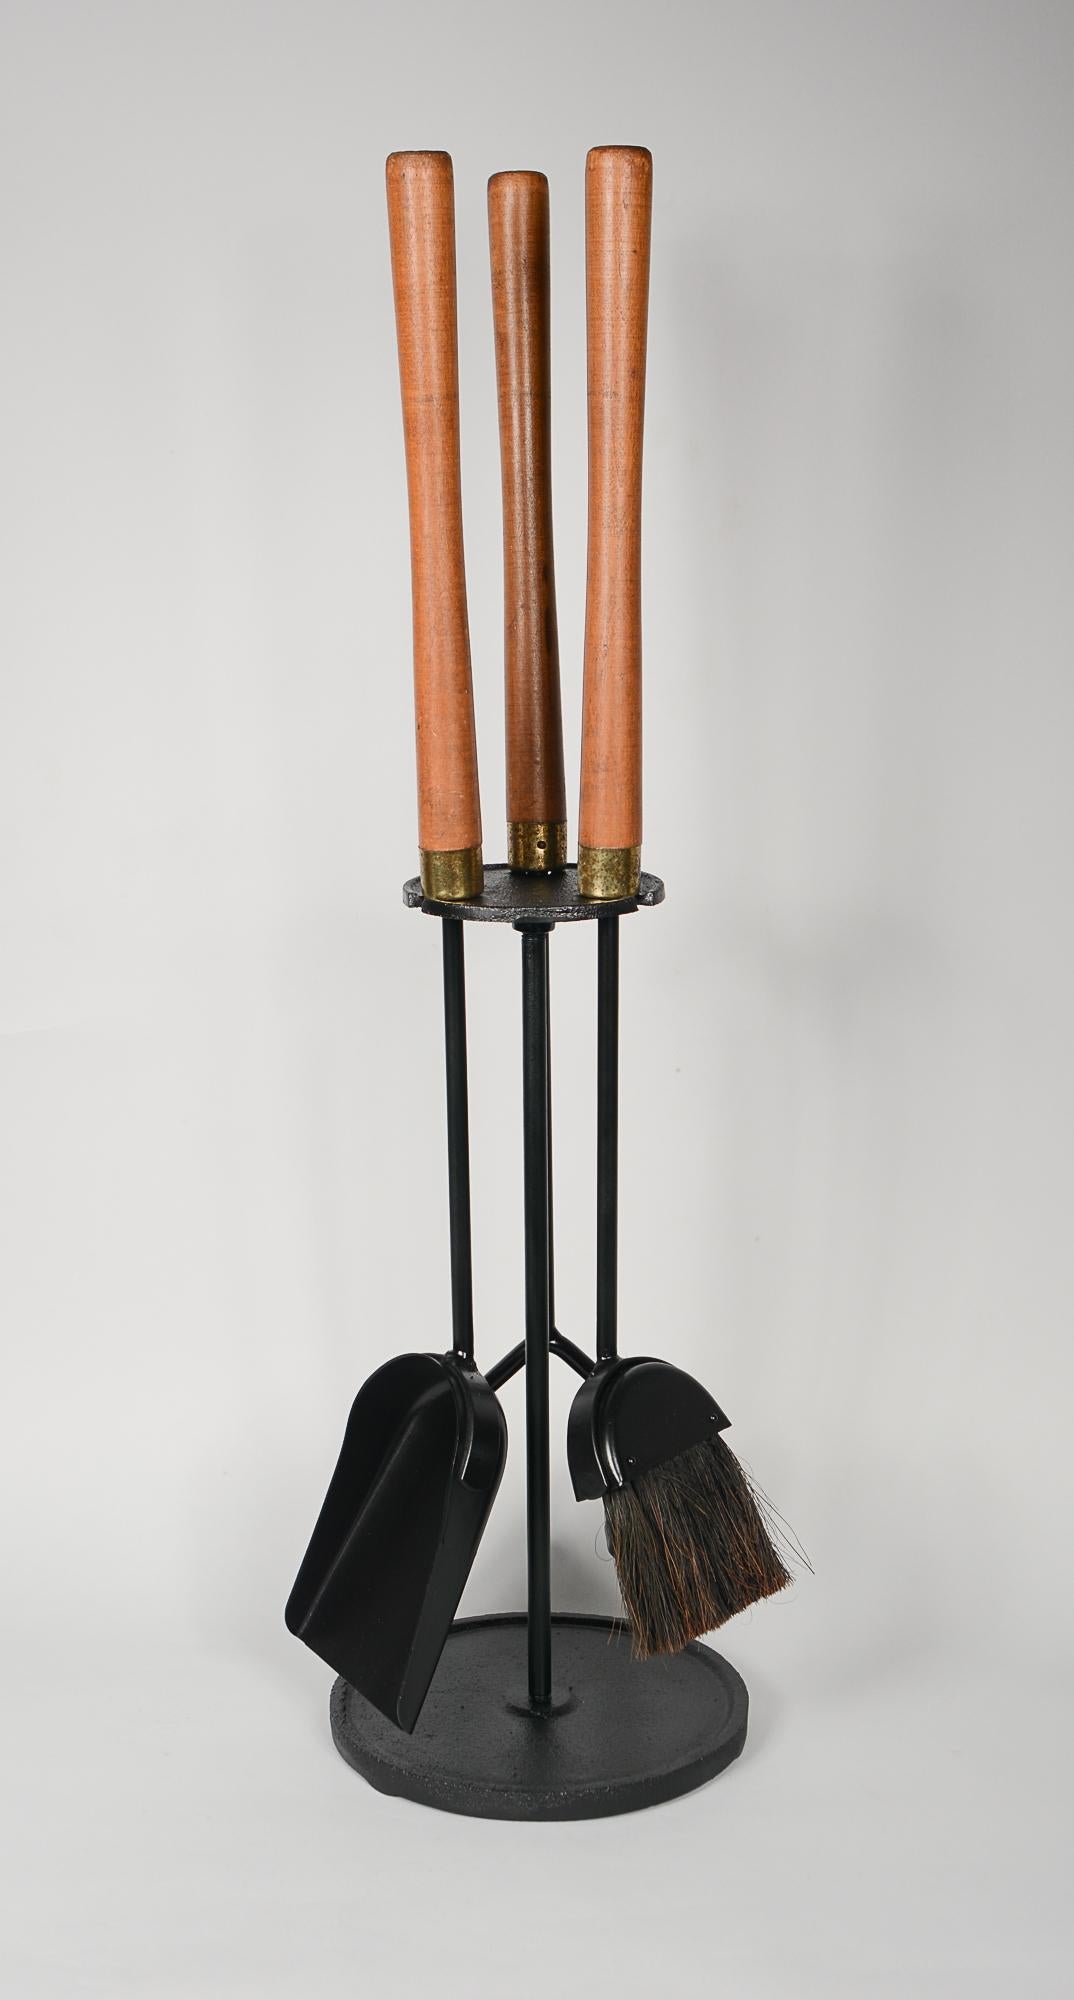 Ensemble d'outils de cheminée à manche en noyer par Seymour Mfg. L'ensemble comprend un tisonnier, un balai et une pelle. Ce sont des outils robustes et bien faits. Le fer semble avoir été peint récemment. Les poignées présentent la finition